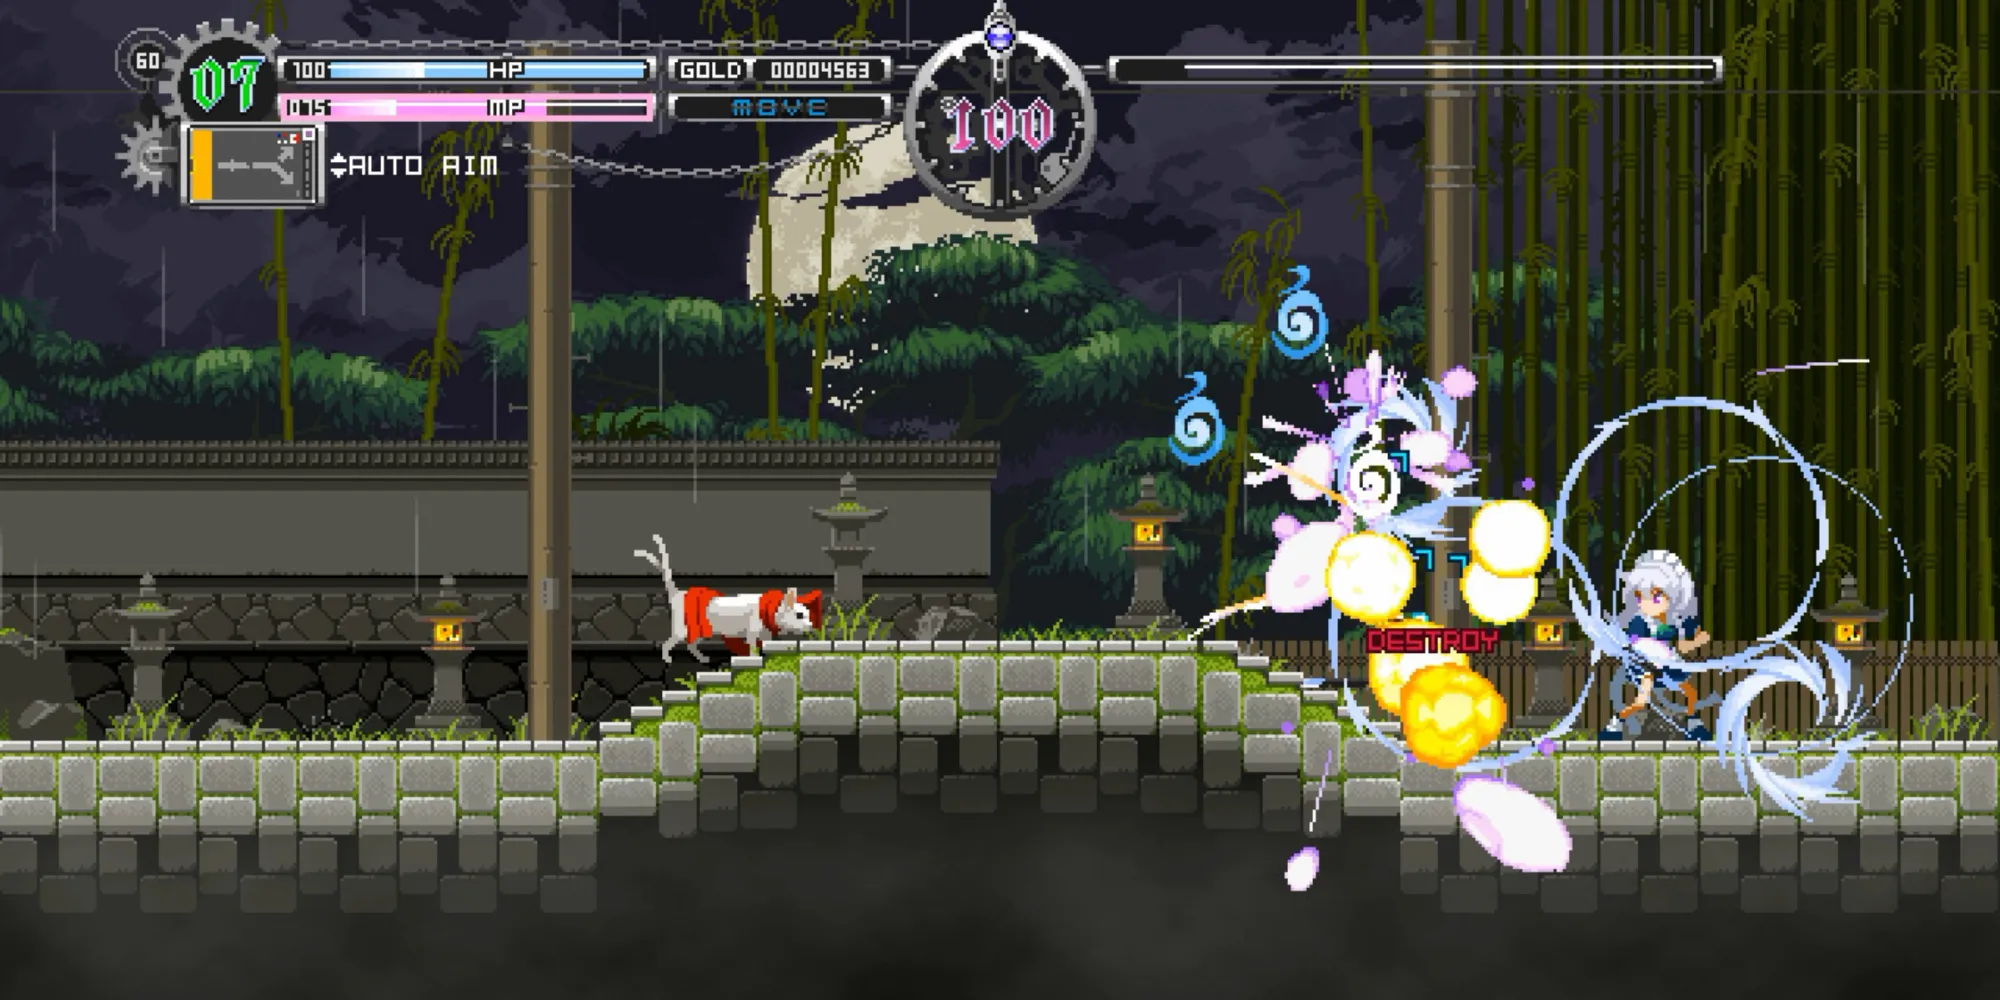 Fighting enemies in Touhou Luna Nights